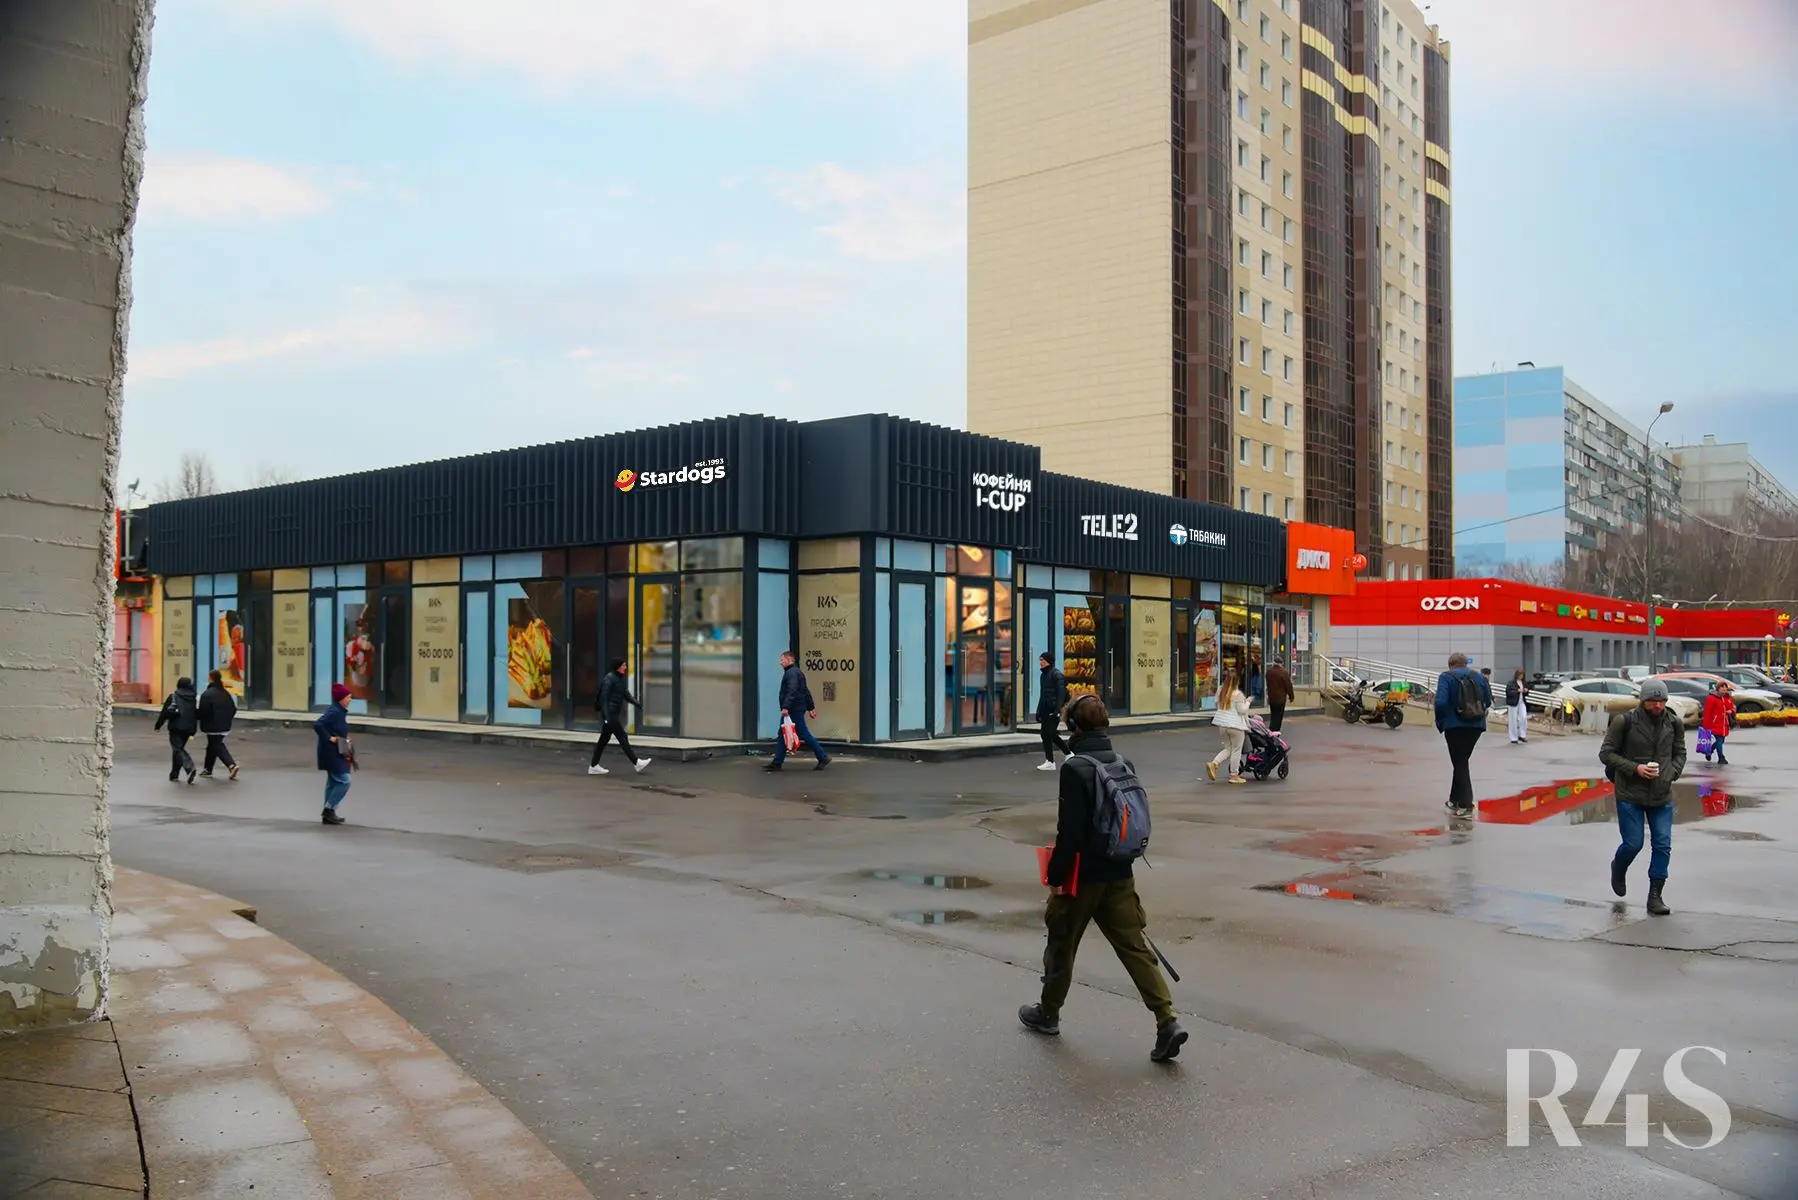 Аренда торговых помещений площадью 6 - 36.5 м2 в Москве:  Шипиловский проезд, 39к3 R4S | Realty4Sale